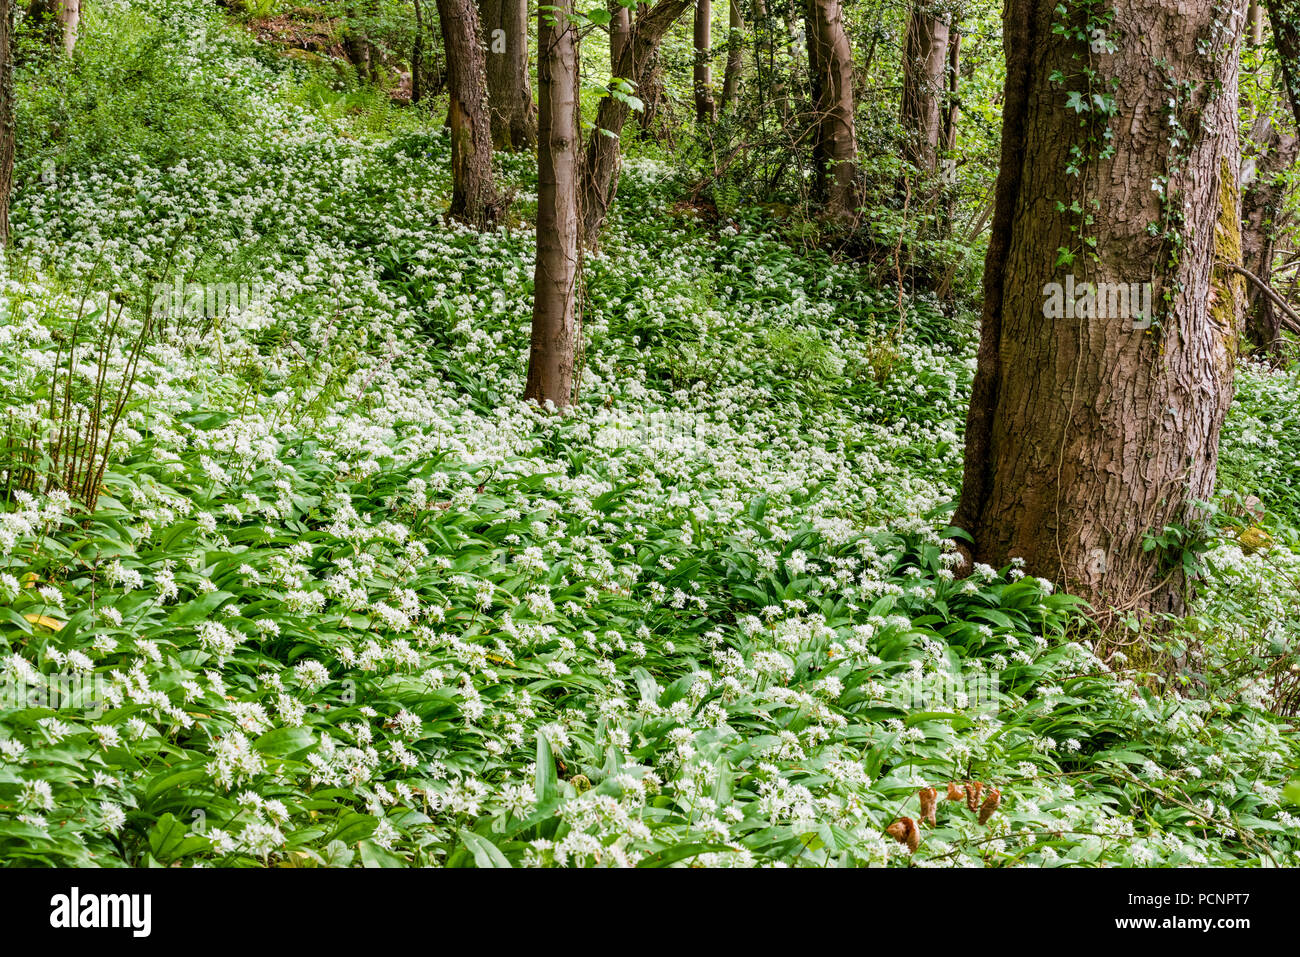 Bärlauch - Allium ursinum - Bärlauch, auch bekannt als breitblättrige Knoblauch, Bärlauch, Bär Lauch, oder Bärlauch, oft in alten Wäldern gefunden. Stockfoto